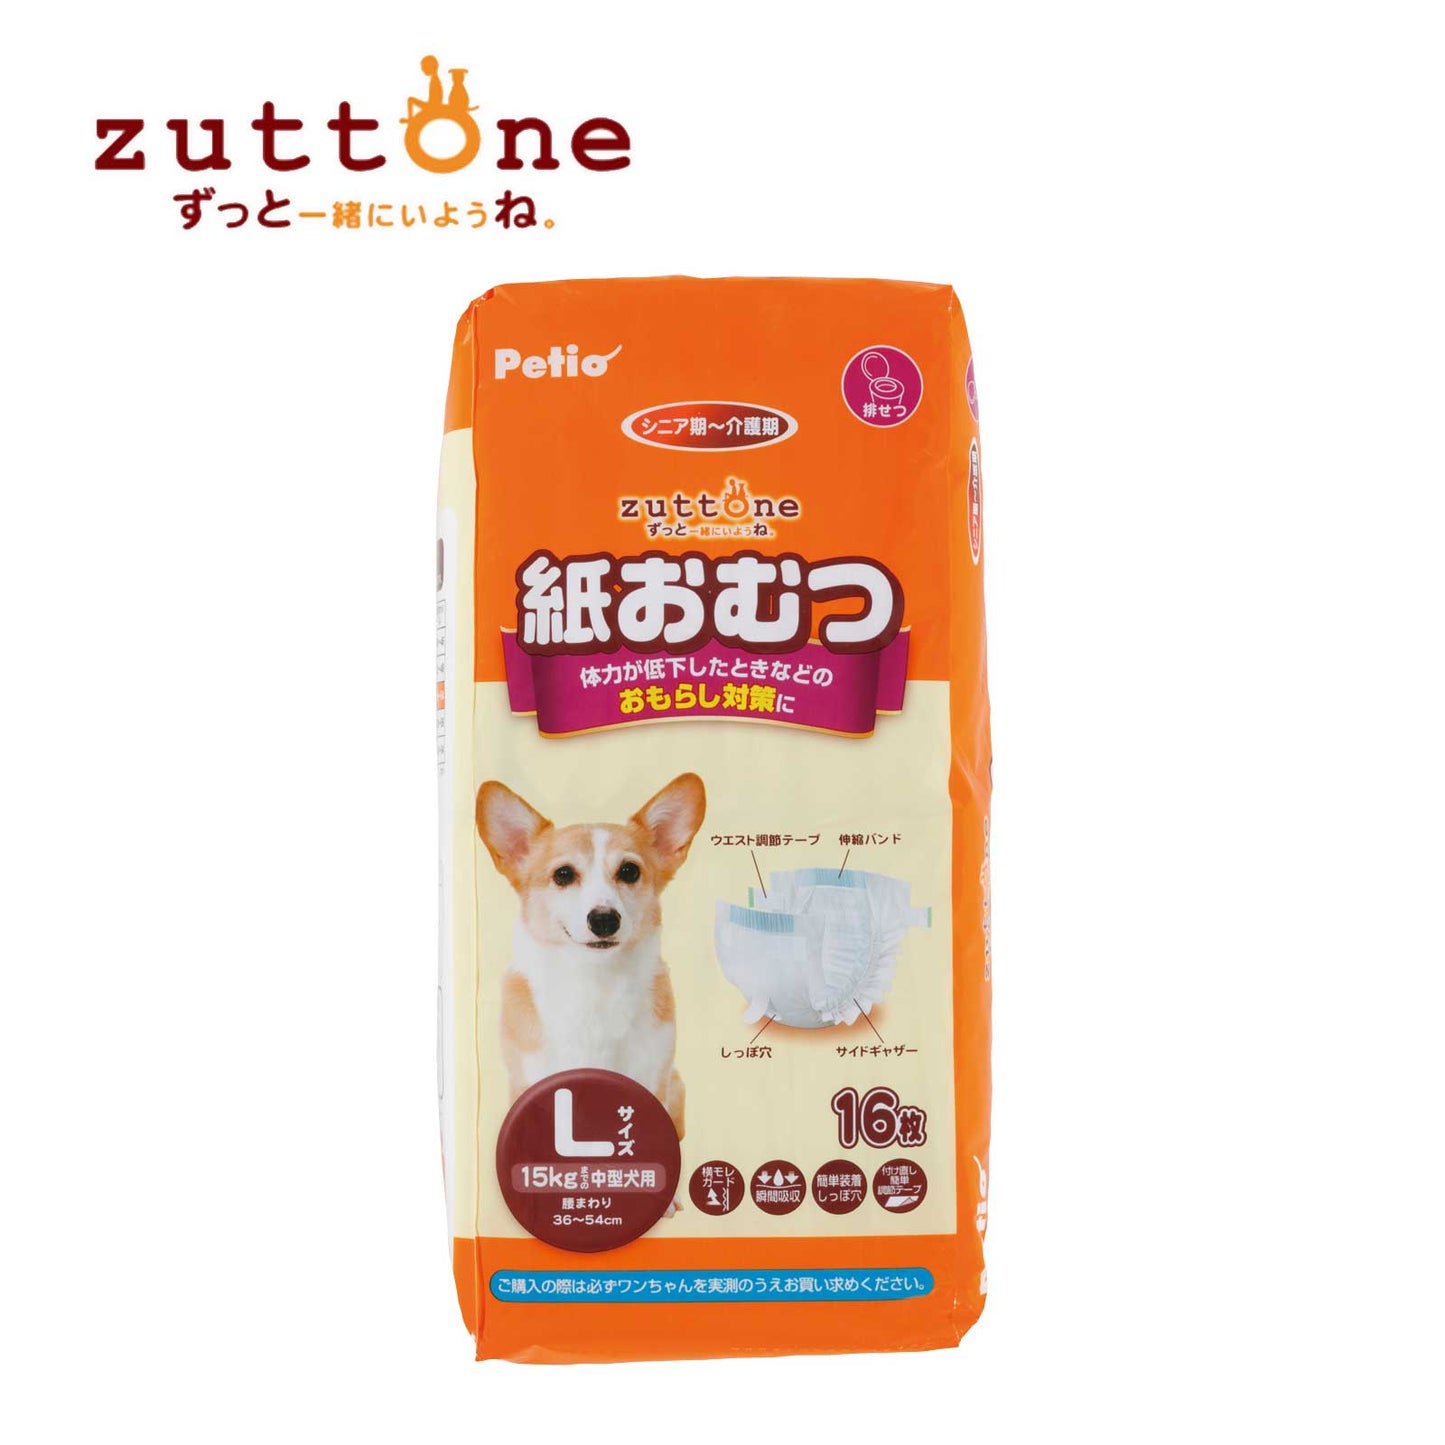 Petio Zuttone Disposable Paper Diaper Nappy